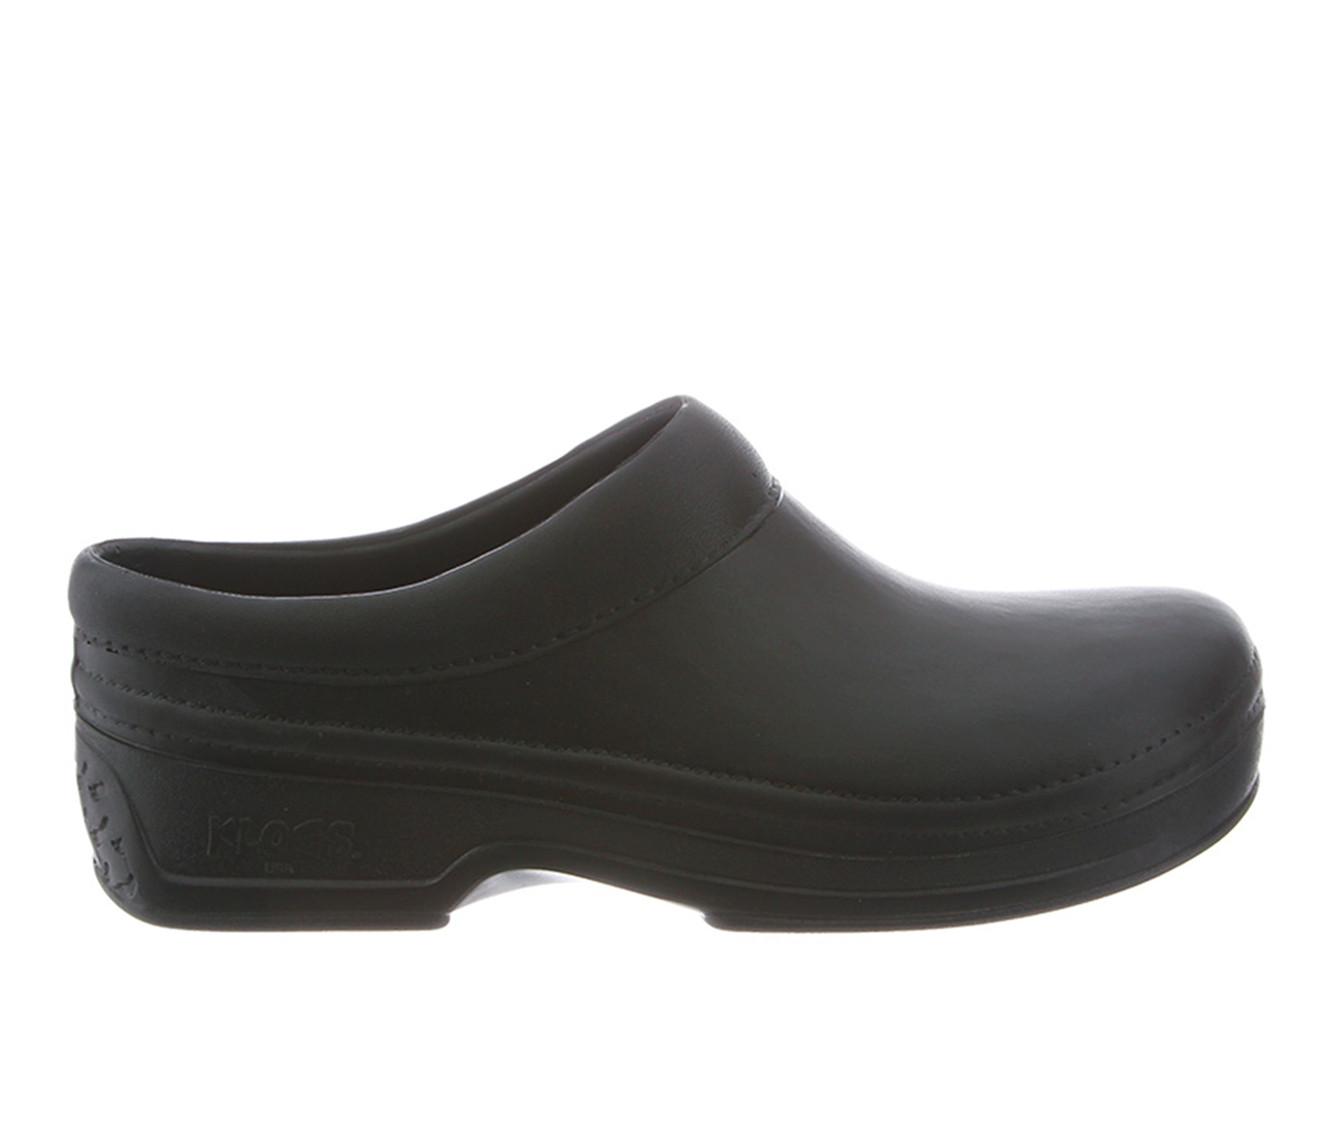 Women's KLOGS Footwear Springfield Slip Resistant Shoes